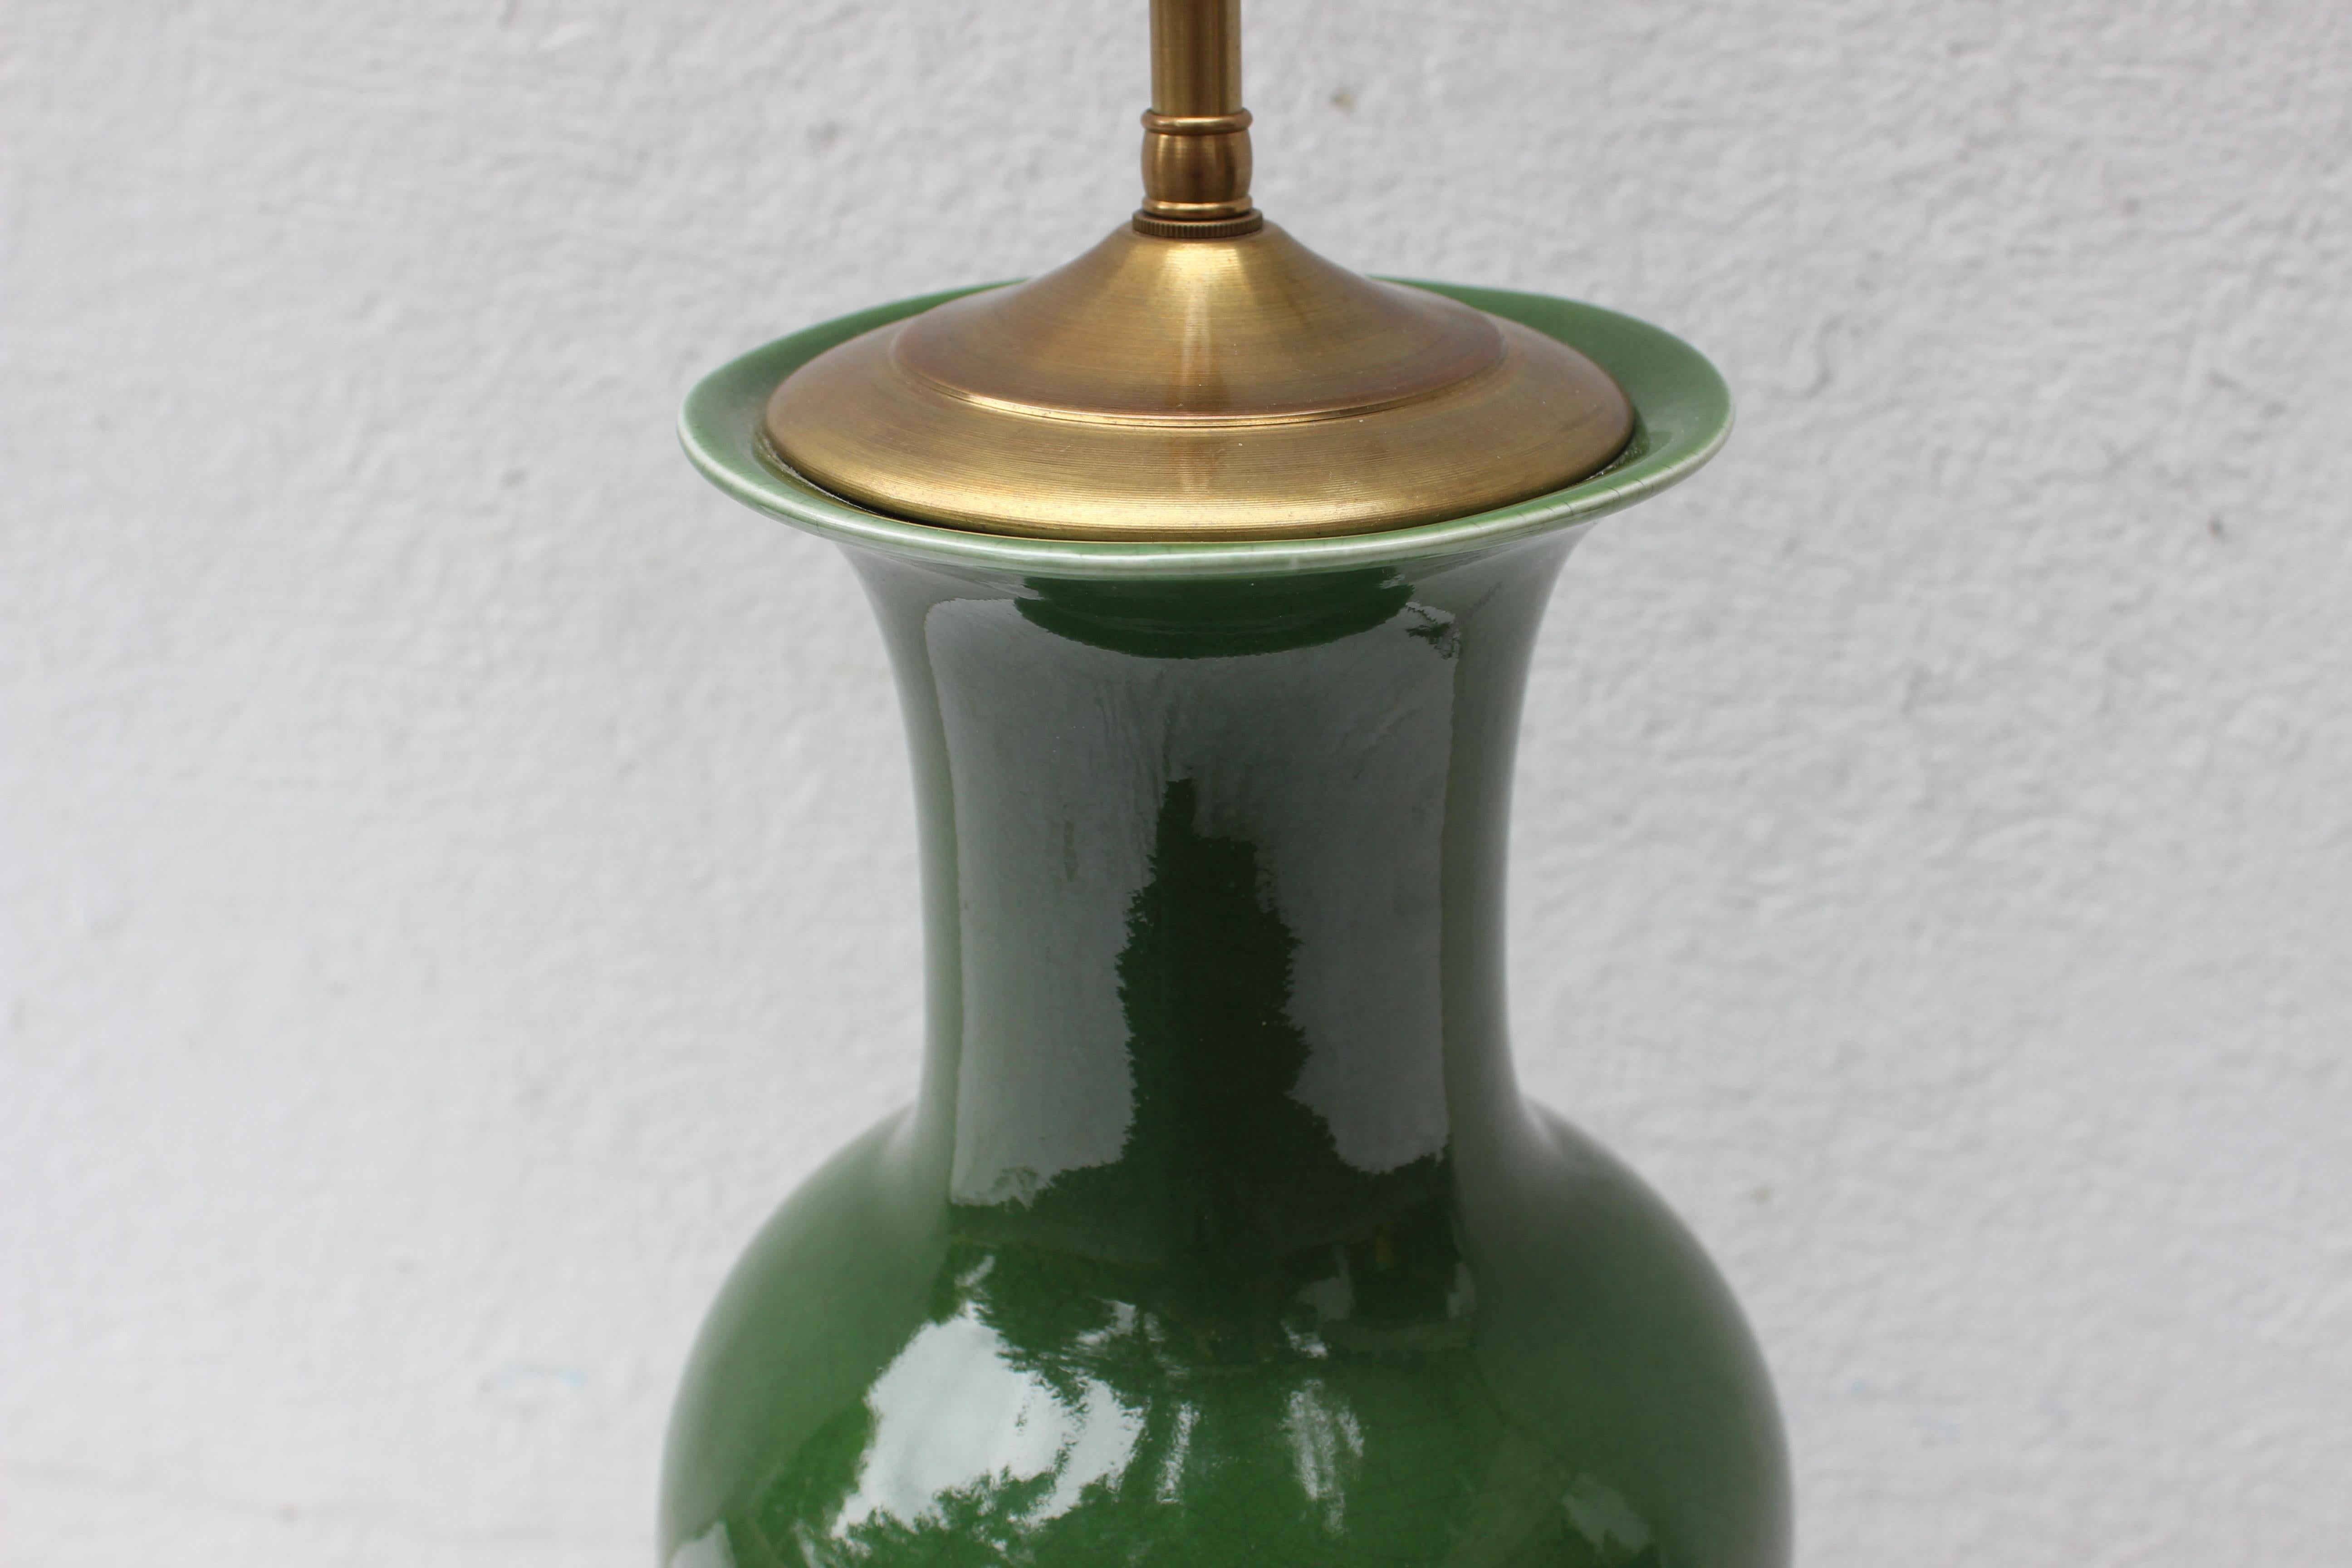 green ceramic lamps